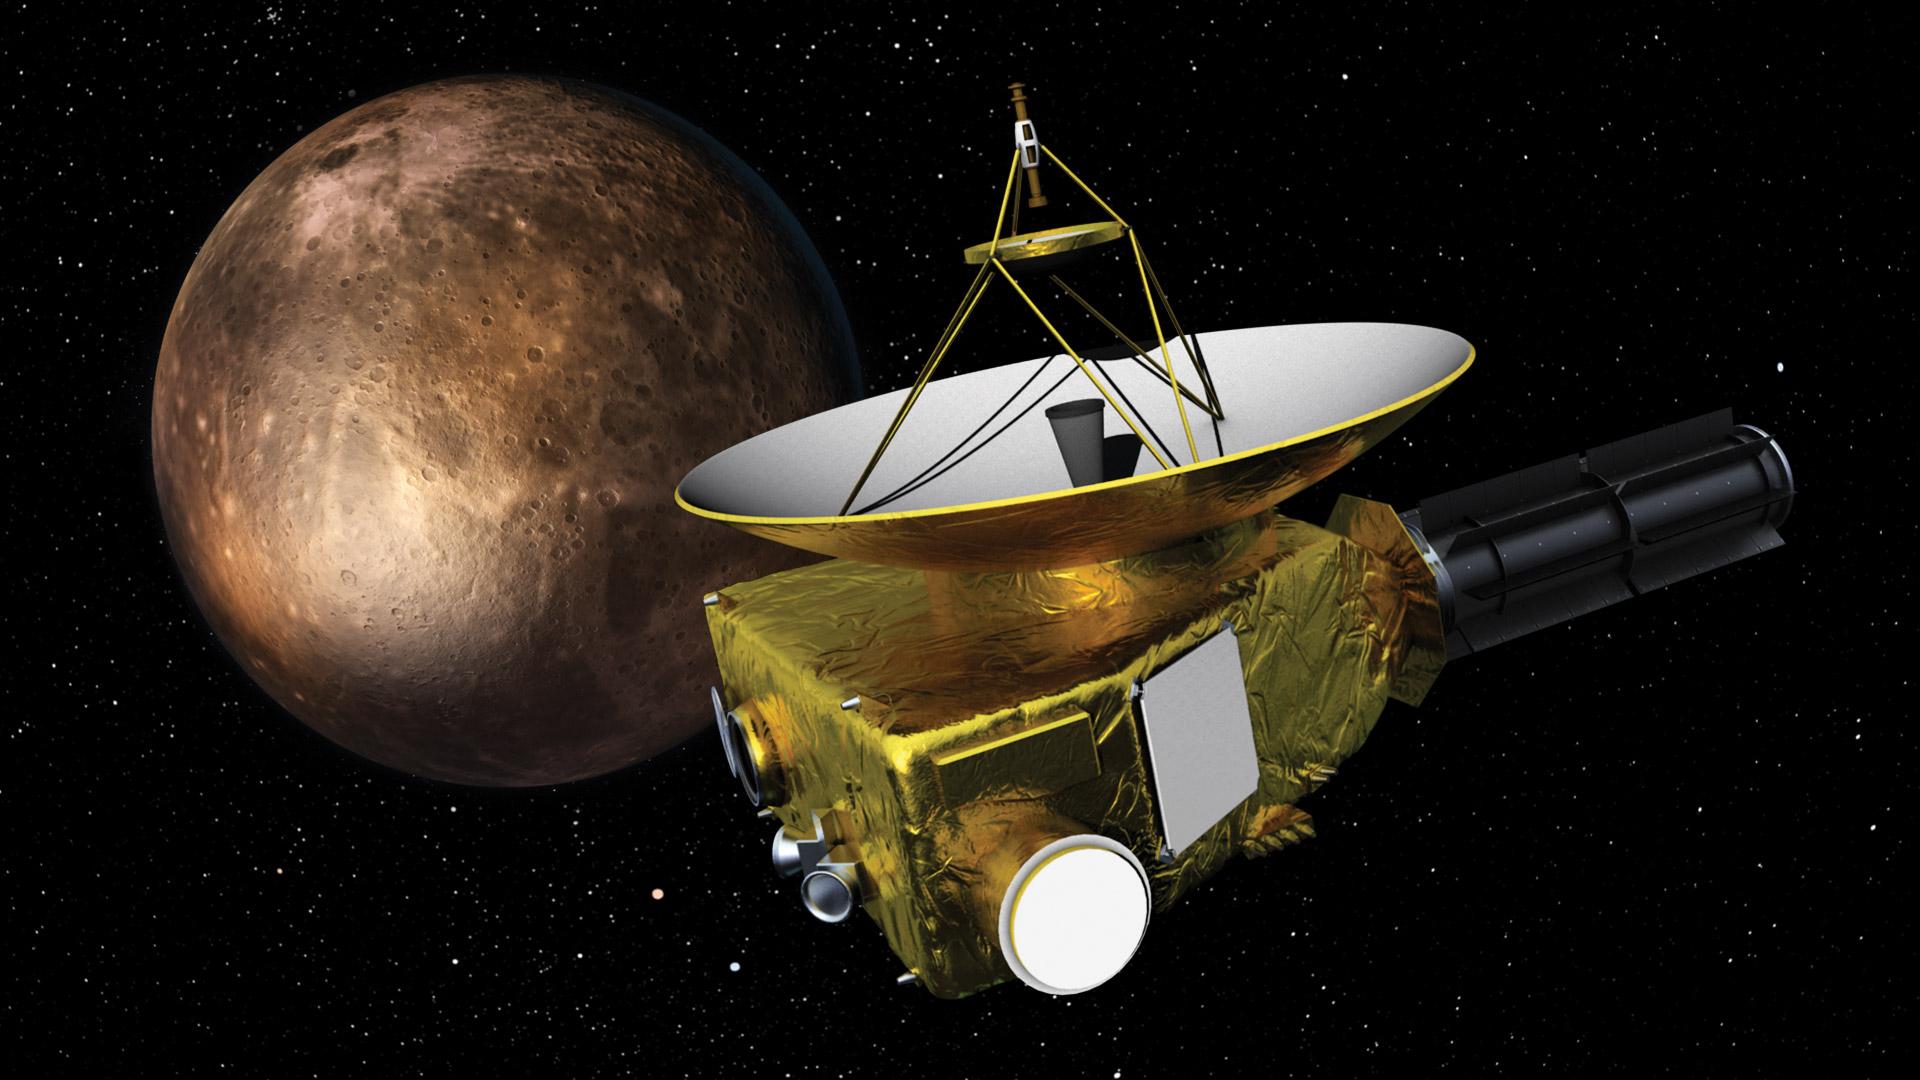 Nasa Pluto Mission New Horizons - HD Wallpaper 